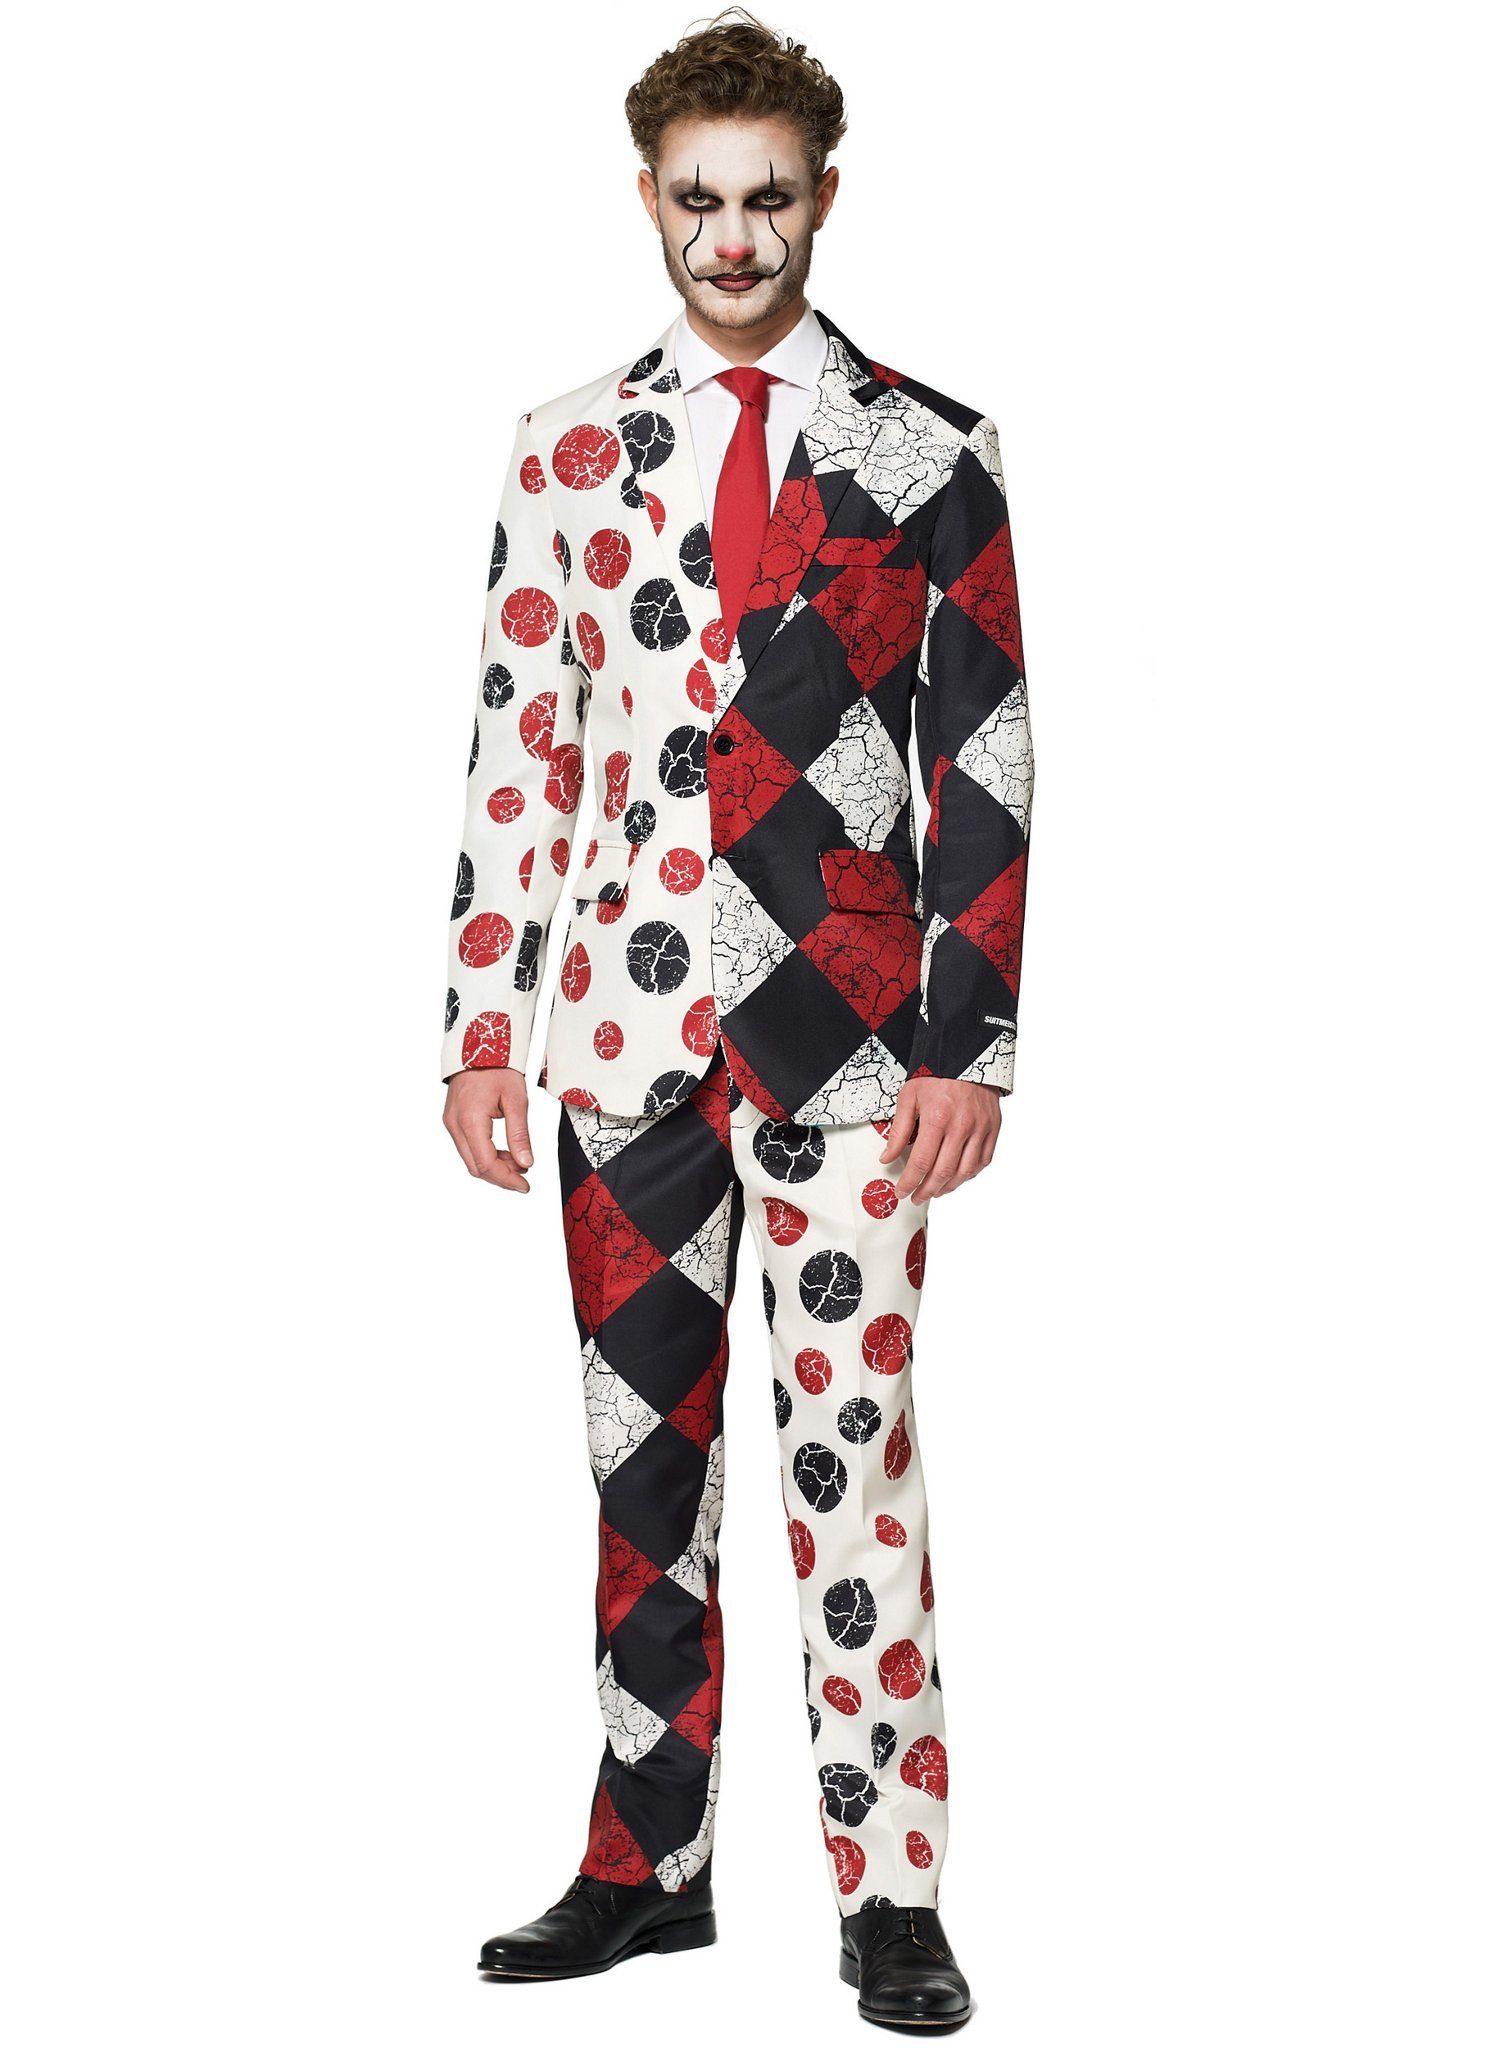 Opposuits Partyanzug SuitMeister Vintage Clown, Clown geht auch in cool: Herrenanzug im Retro-Zirkus-Look